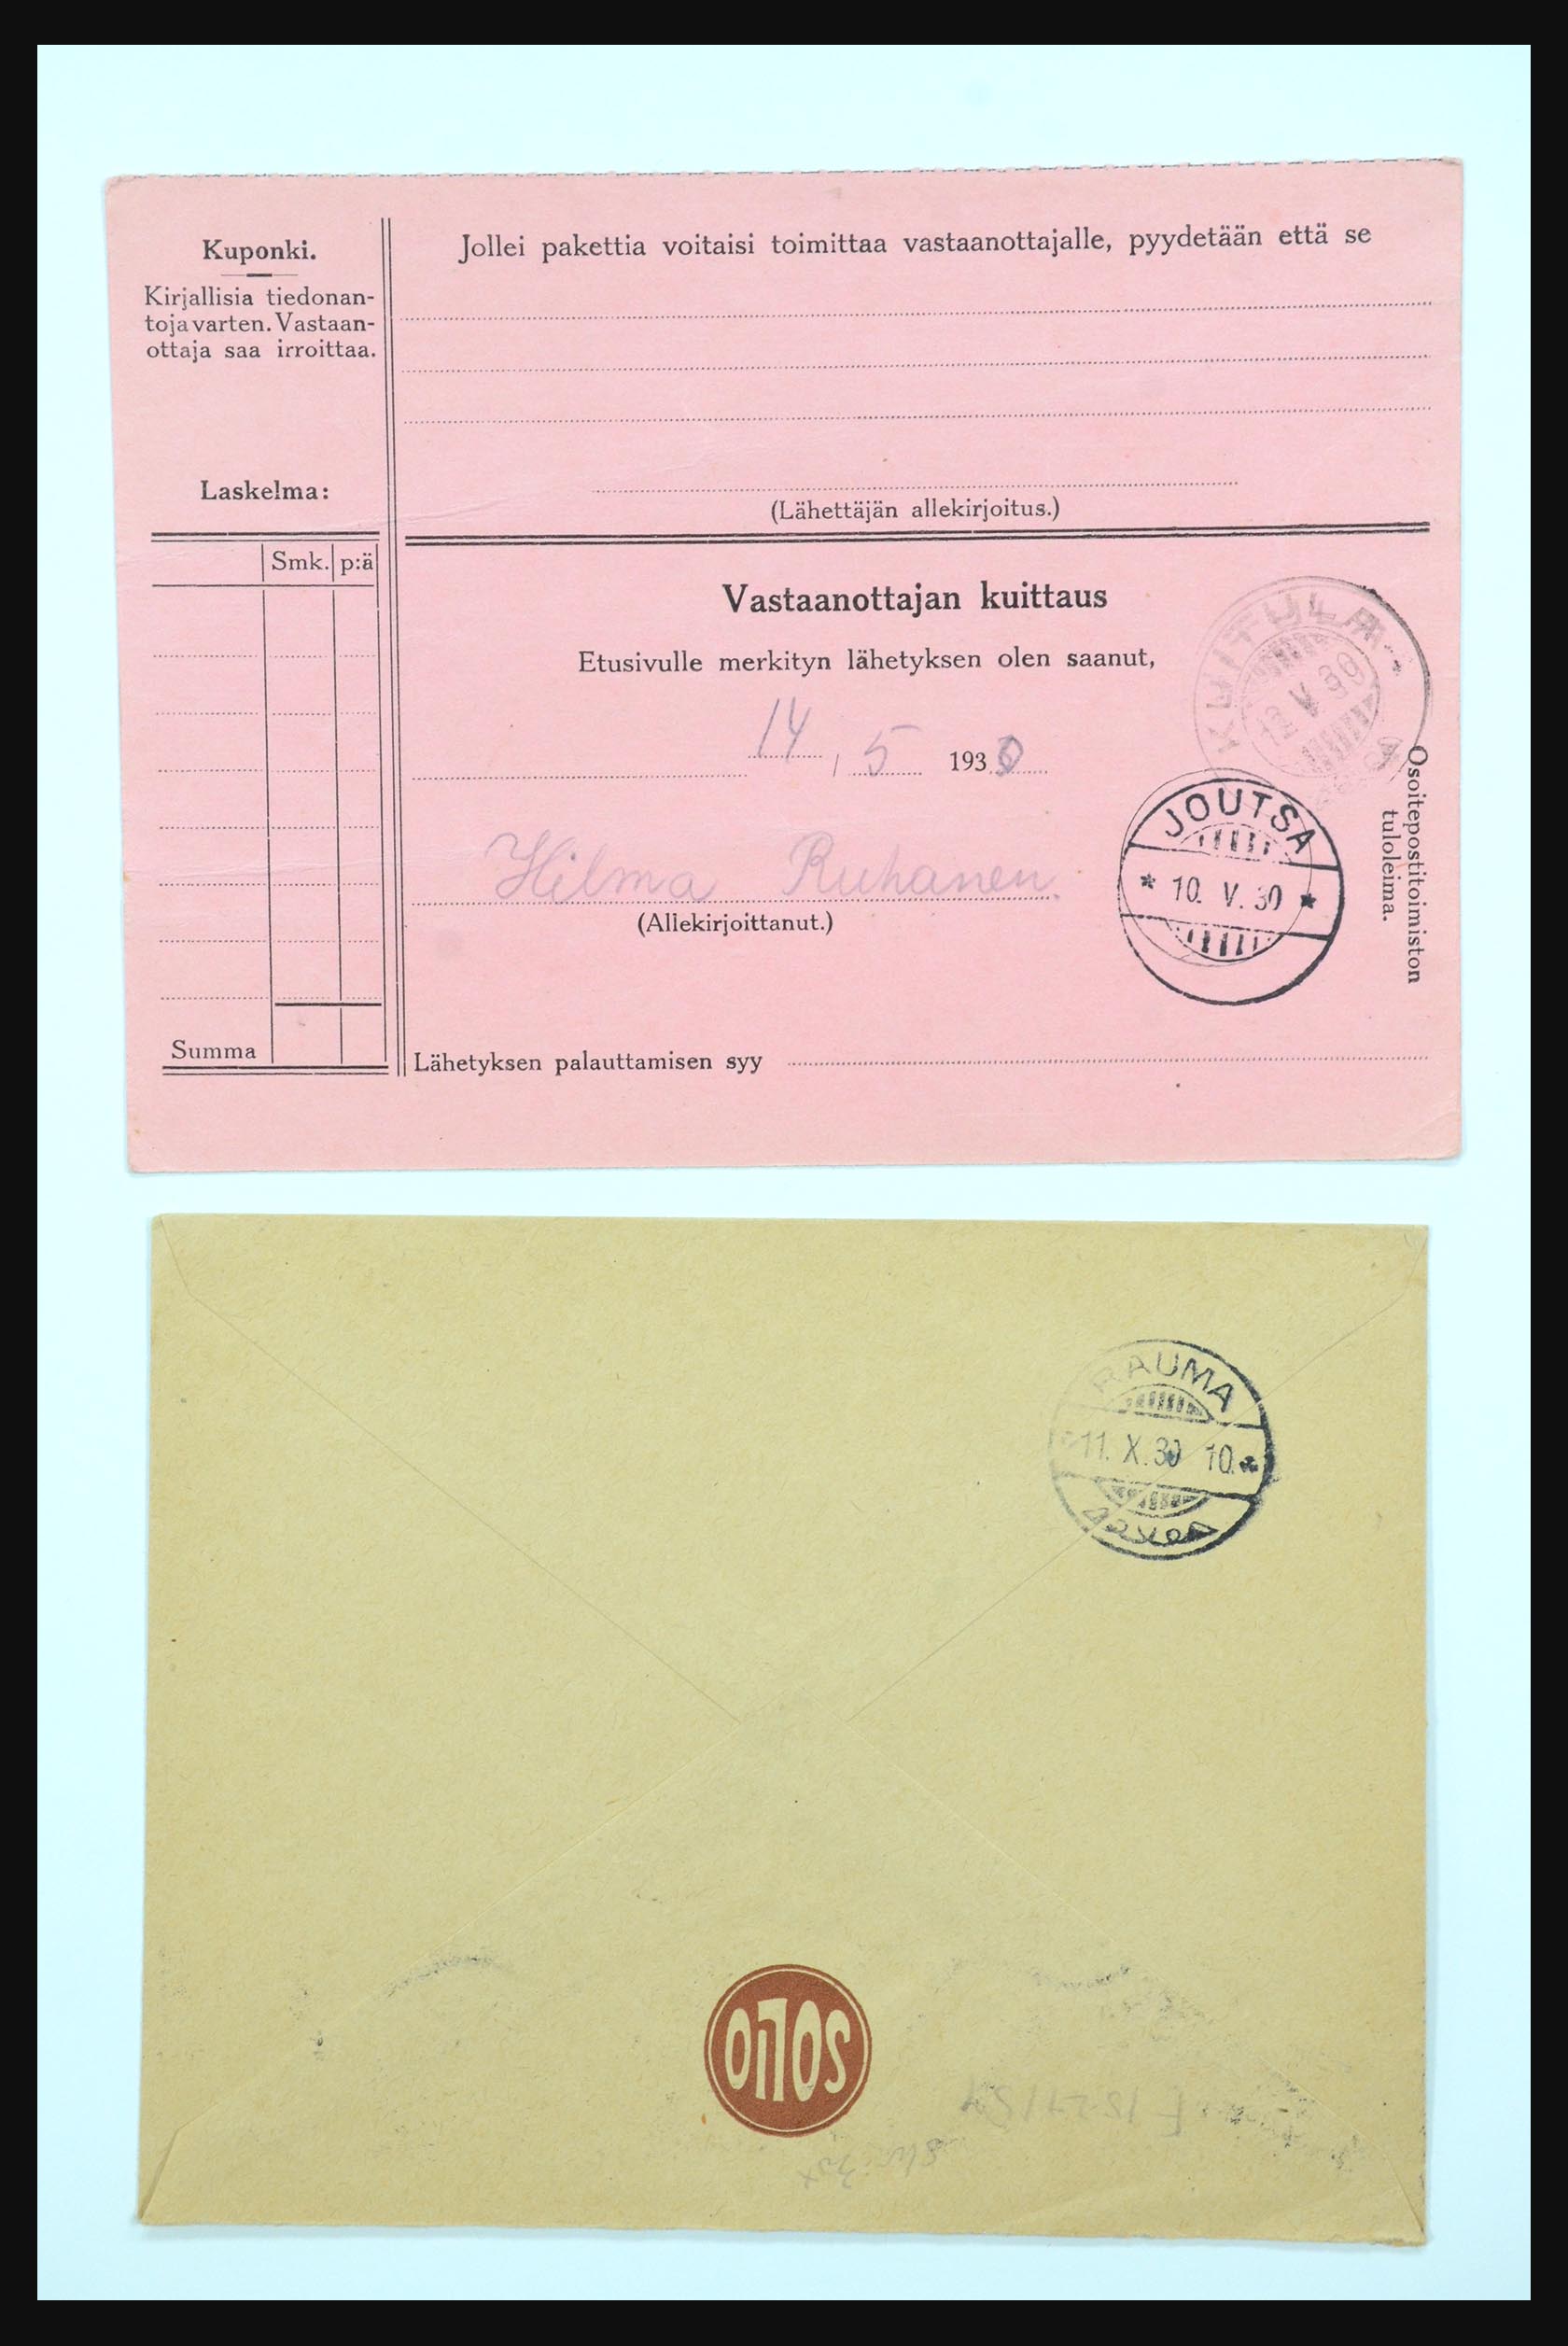 31658 063 - 31658 Finland brieven 1833-1960.